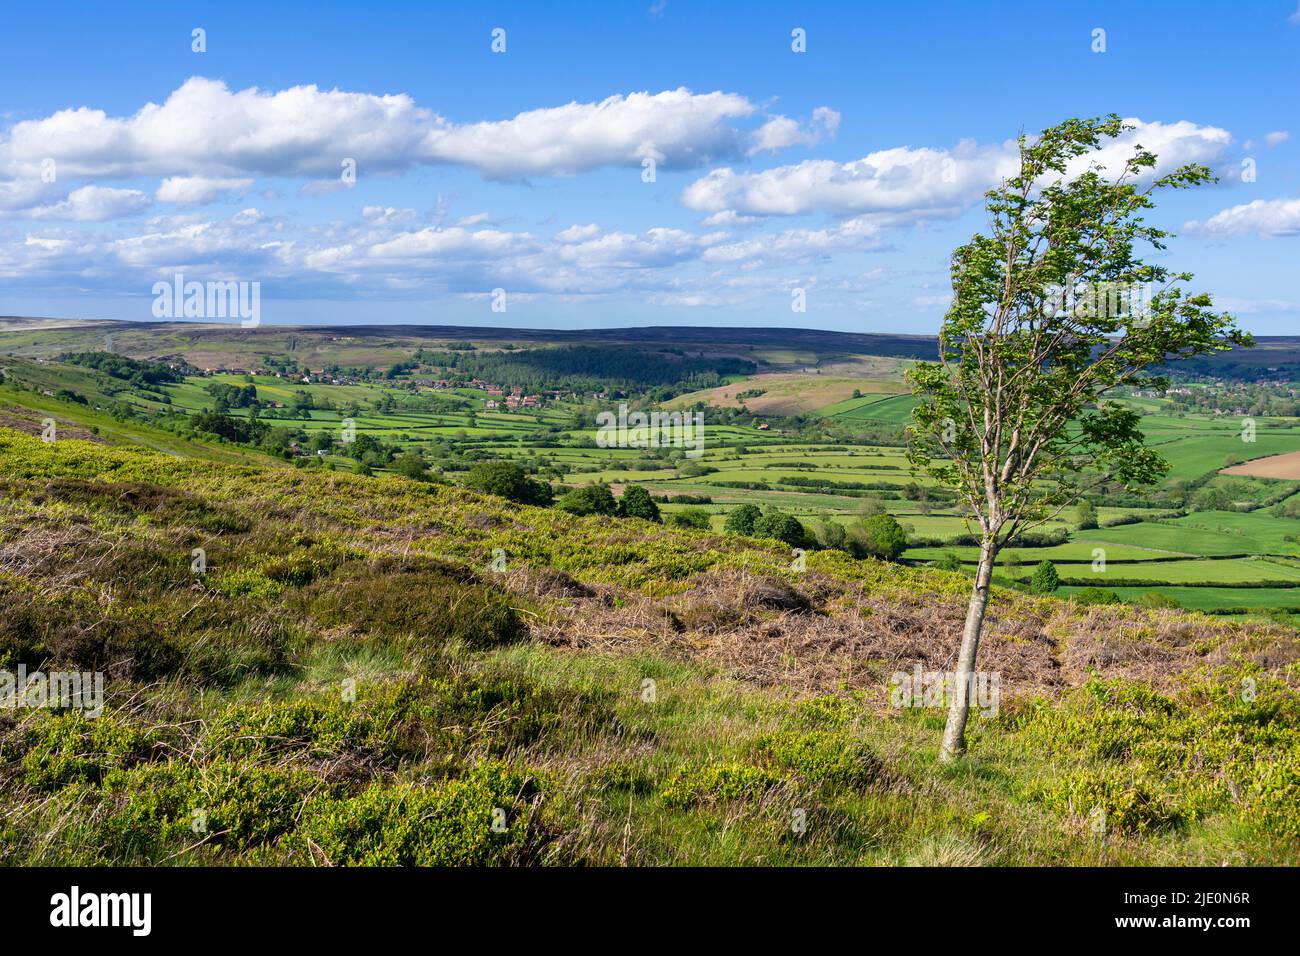 North York Moors et vue sur les champs verts terres agricoles et landes de Blakey Ridge North York Moors parc national North Yorkshire Angleterre Royaume-Uni GB Europe Banque D'Images